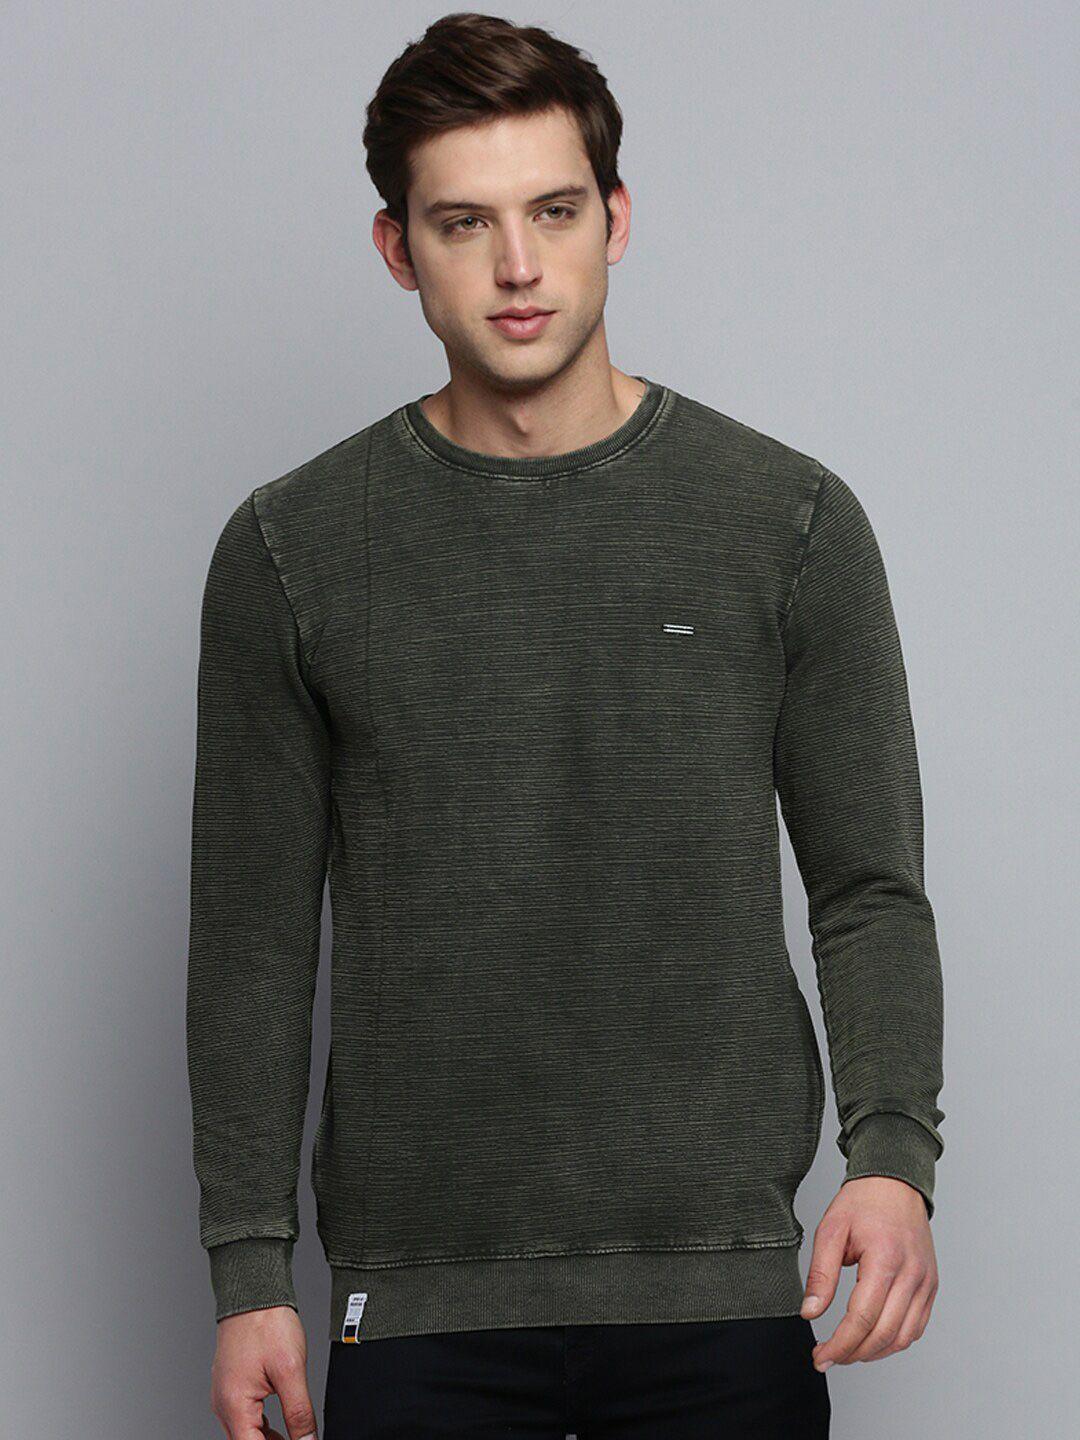 showoff-round-neck-self-design-cotton-sweatshirt